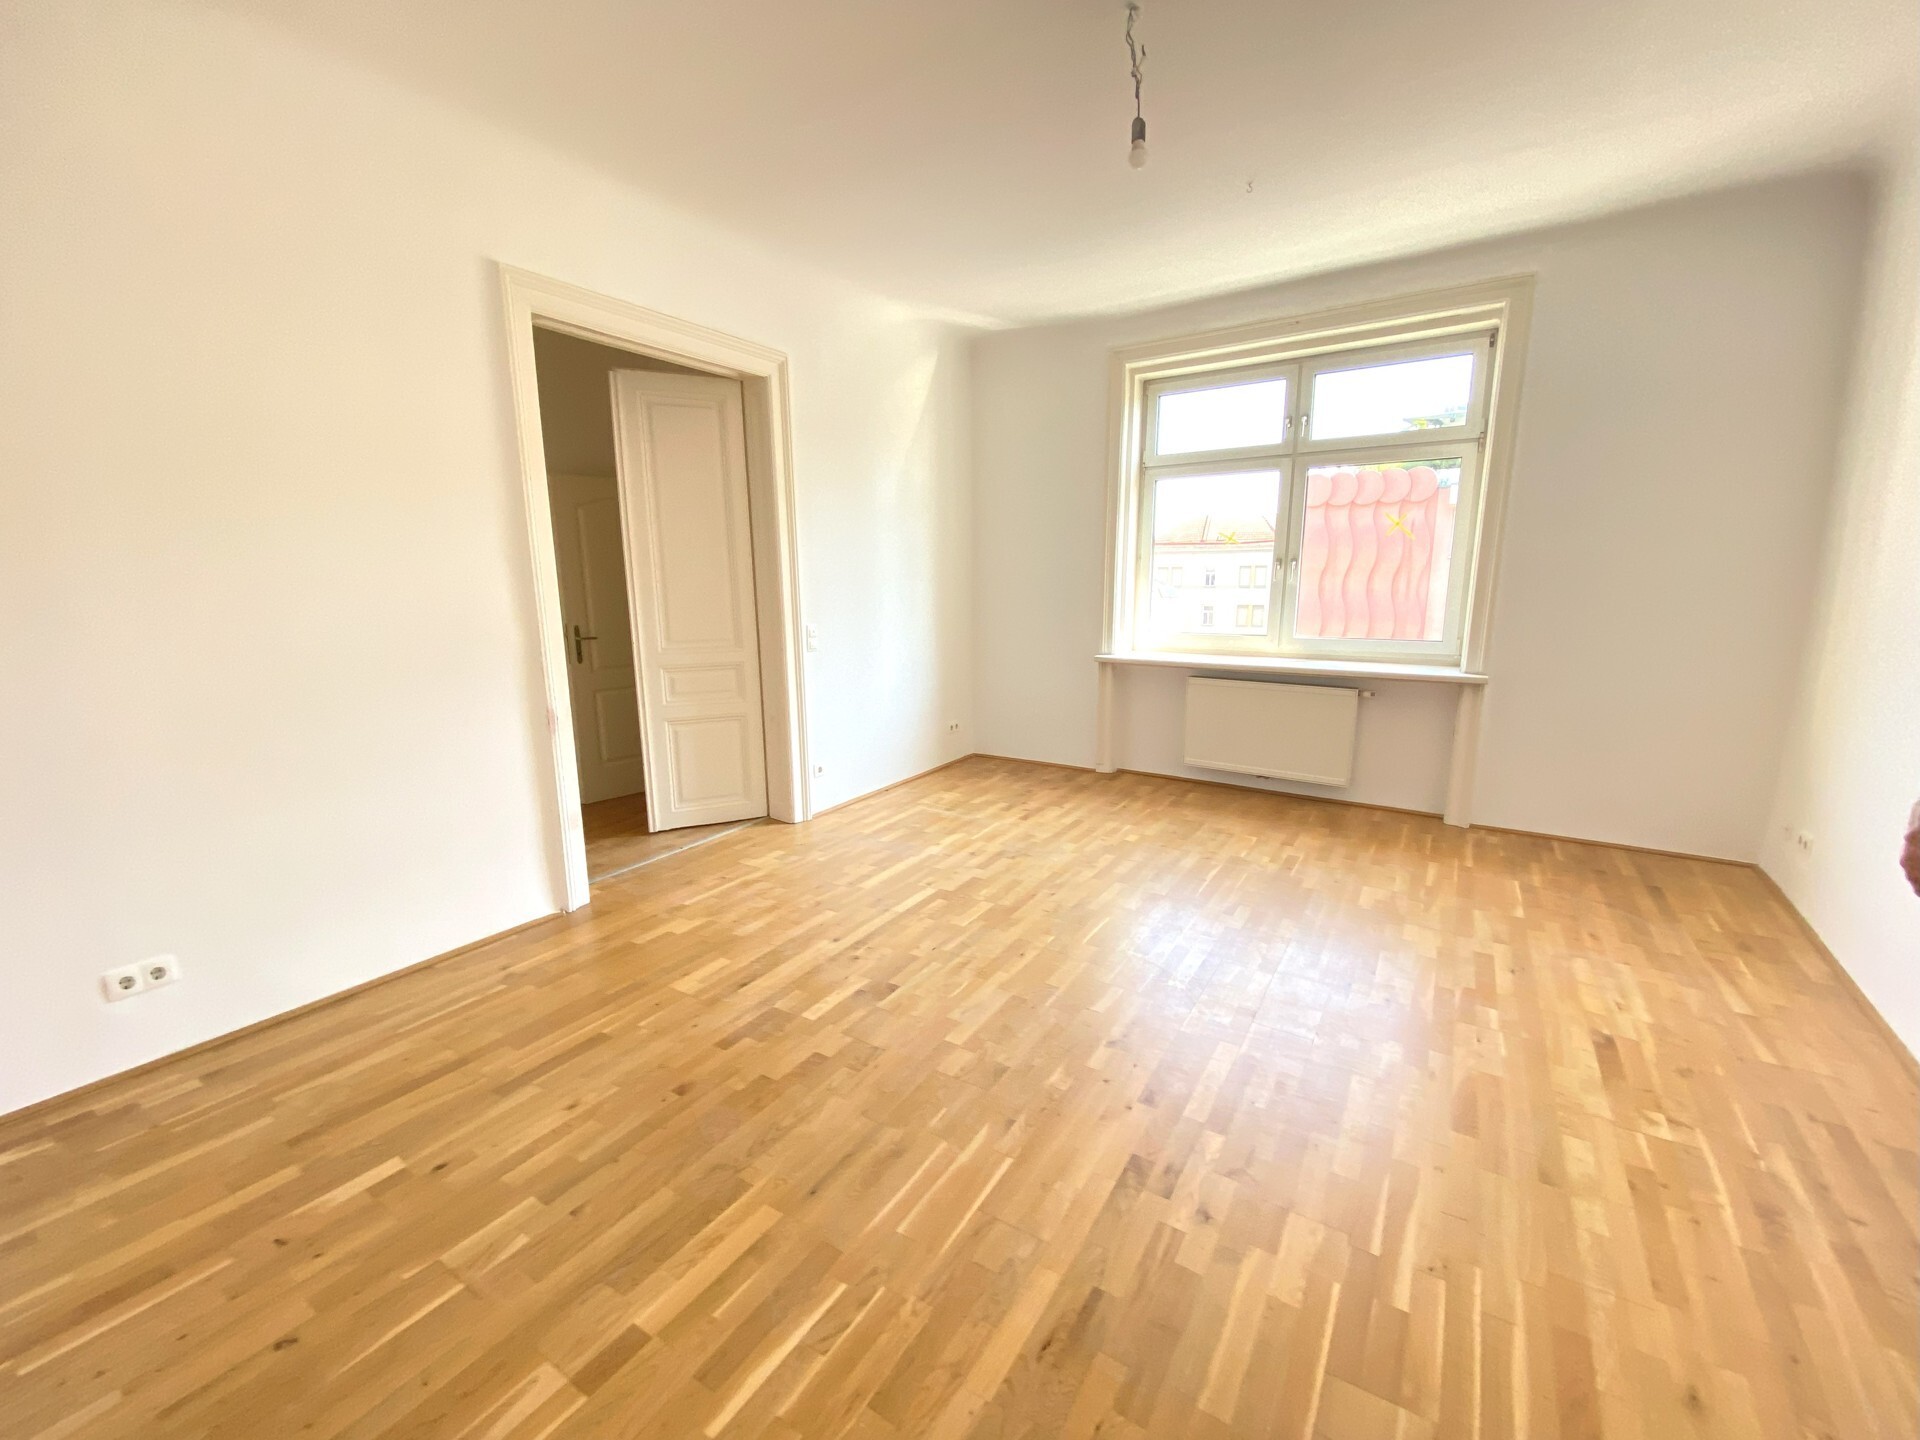 Ruhige 2-Zimmer Altbauwohnung mit moderner Einbauküche und top Bad - zu kaufen in 1030 Wien